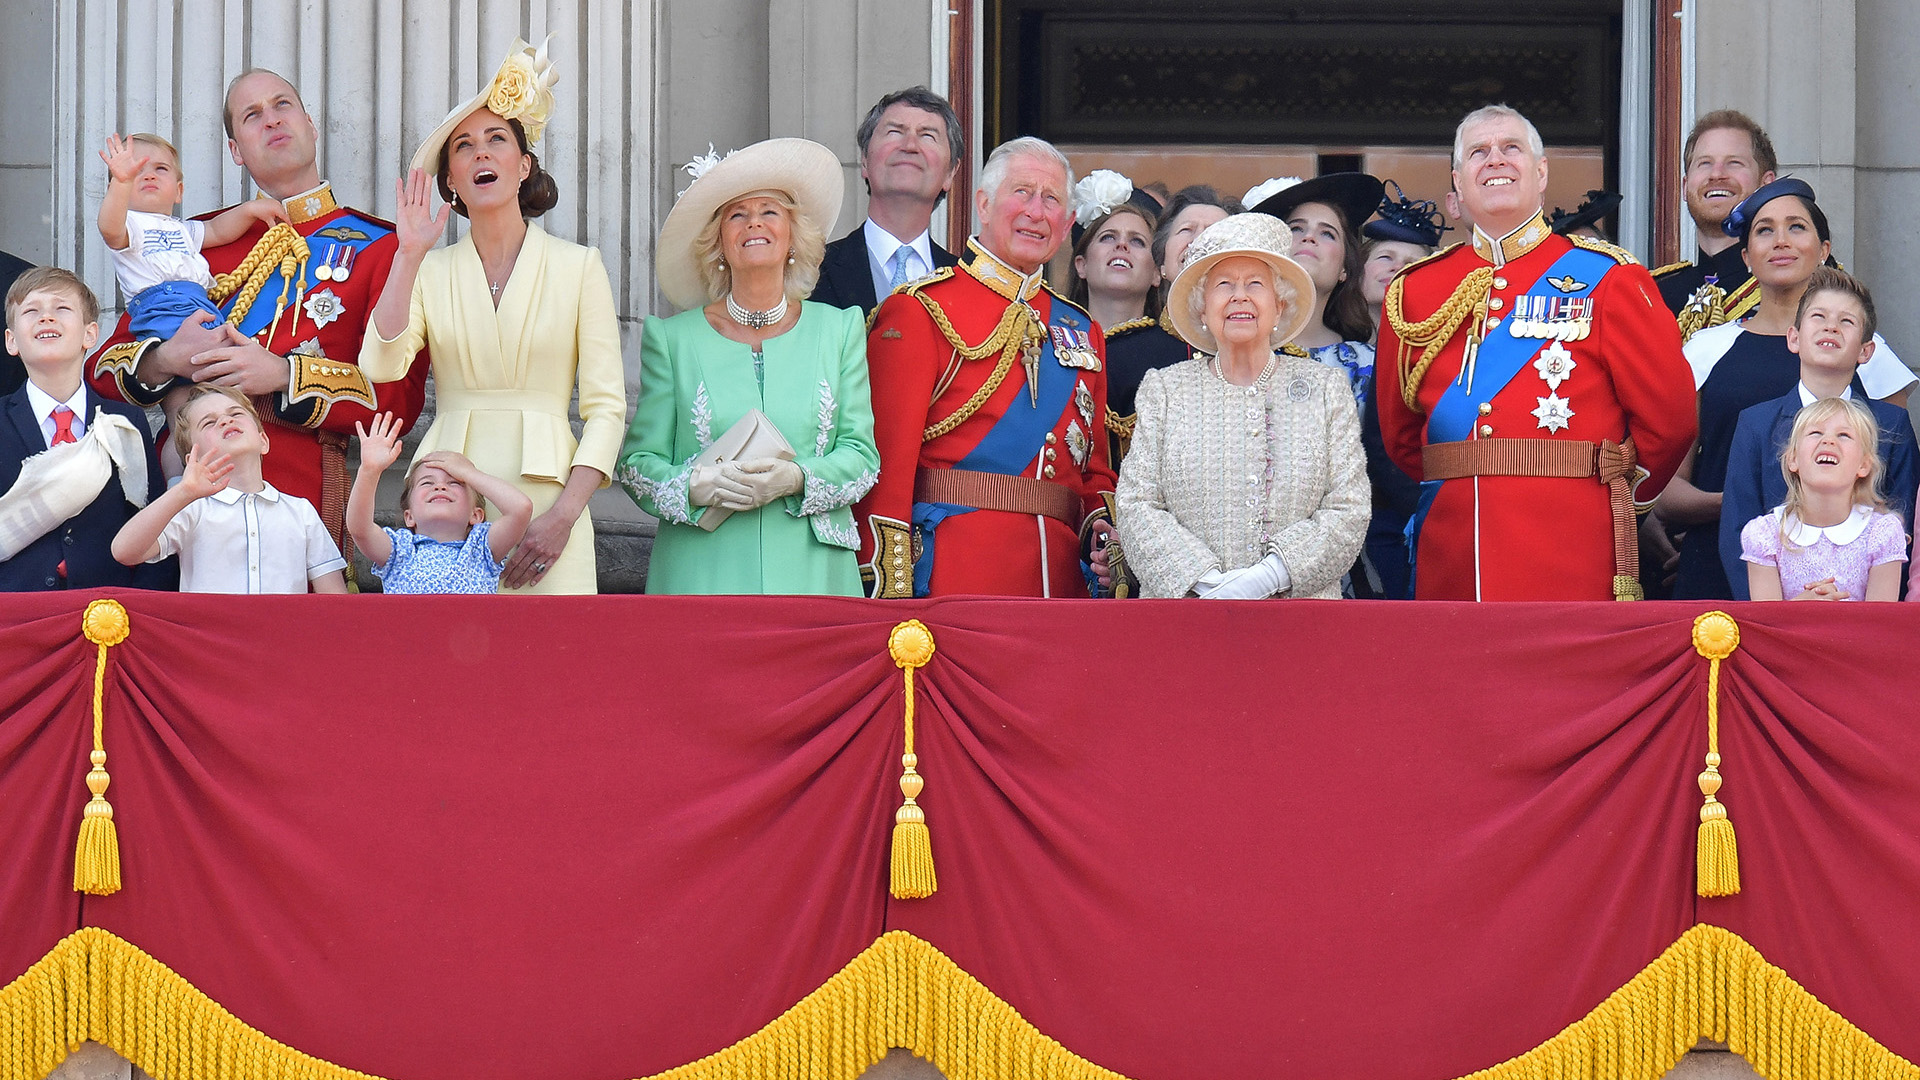 (De izquierda a derecha) Príncipe Guillermo de Gran Bretaña, duque de Cambridge sosteniendo al príncipe Luis, el príncipe George, la princesa Charlotte, Kate Middleton, duquesa de Cambridge, Camilla, duquesa de Cornualles, el vicealmirante Timothy Laurence, el príncipe Carlos de Gran Bretaña, la princesa Beatriz, la Princesa Ana, la Reina Isabel II de Gran Bretaña, la Princesa Eugenia de York, Lady Louise Windsor, el Príncipe Andrew, Duque de York, el Príncipe Harry, Duque de Sussex, Meghan Markle, Duquesa de Sussex, James, Viscount Severn e Isla Phillips se paran con otros miembros de la Familia Real en el balcón del Palacio de Buckingham para ver un vuelo de aviones de la Royal Air Force, en Londres el 8 de junio de 2019 (AFP)